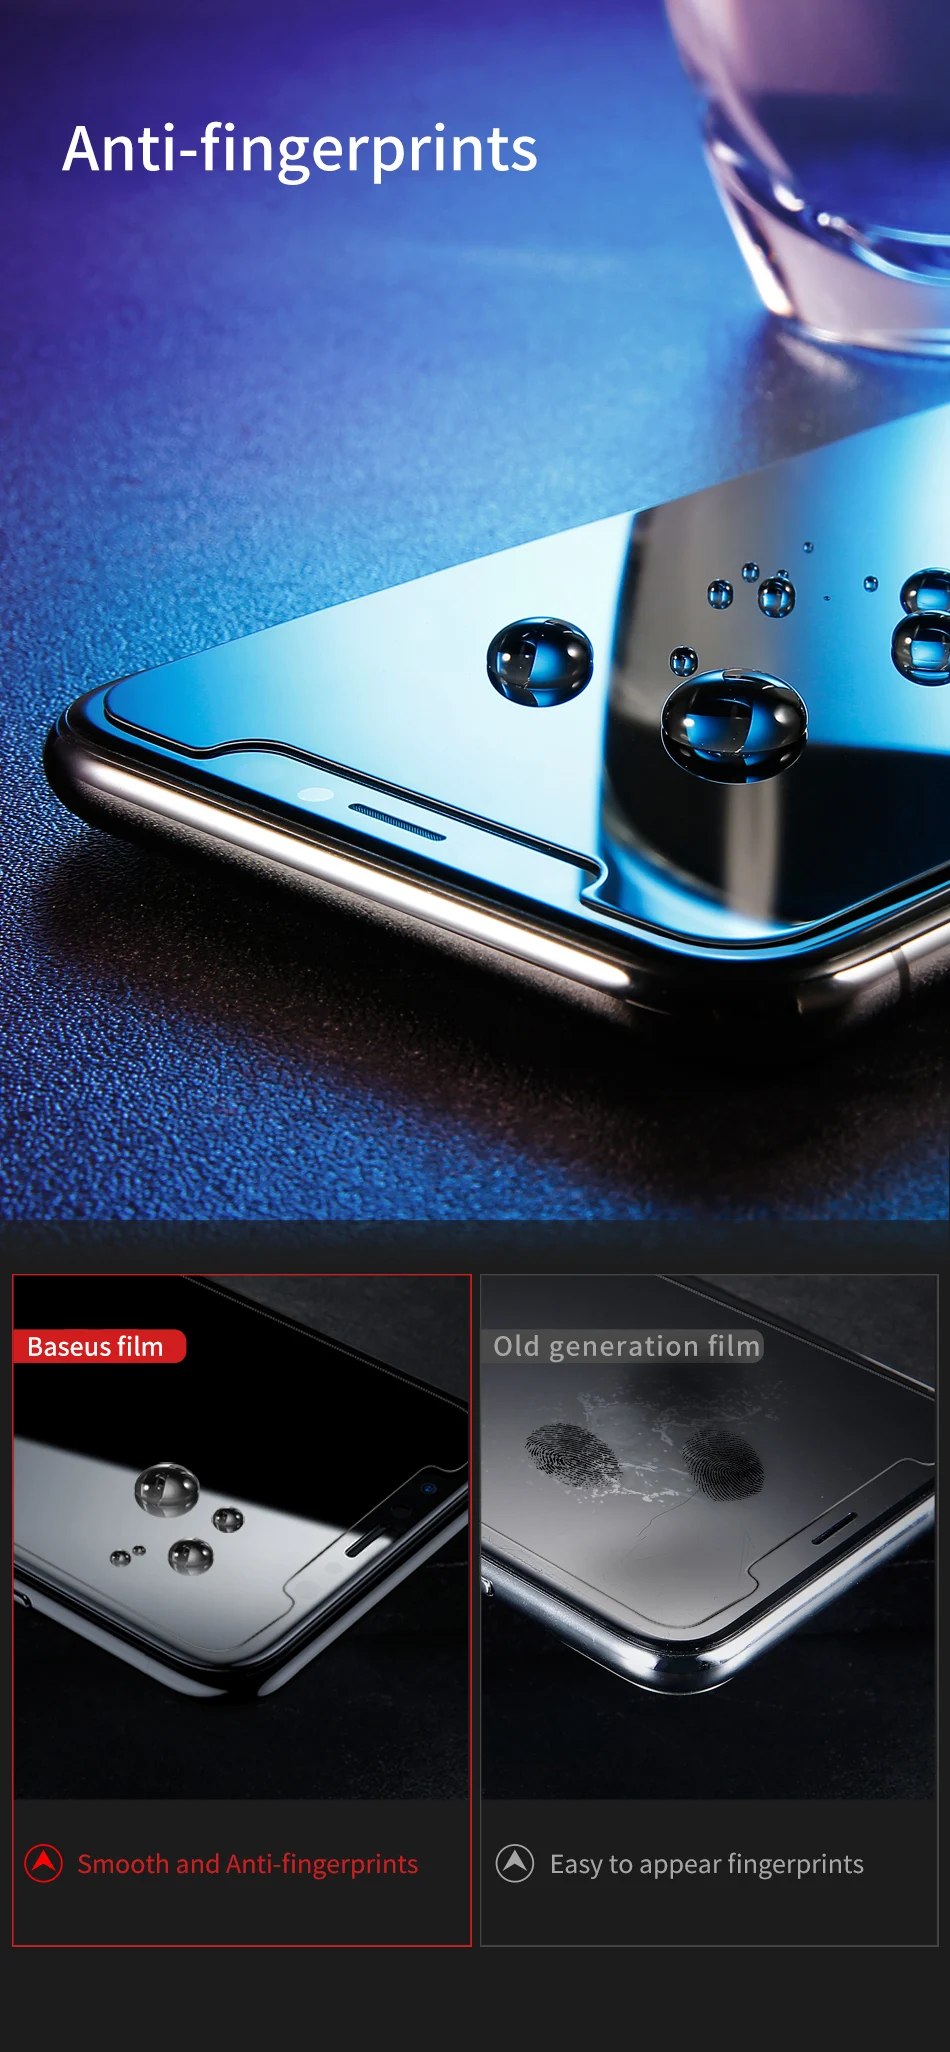 Baseus 0,3 мм закаленное стекло для защиты экрана от конфиденциальности для iPhone 8 7 Plus 3D защитное закаленное стекло для iPhone 7 8 Стекло